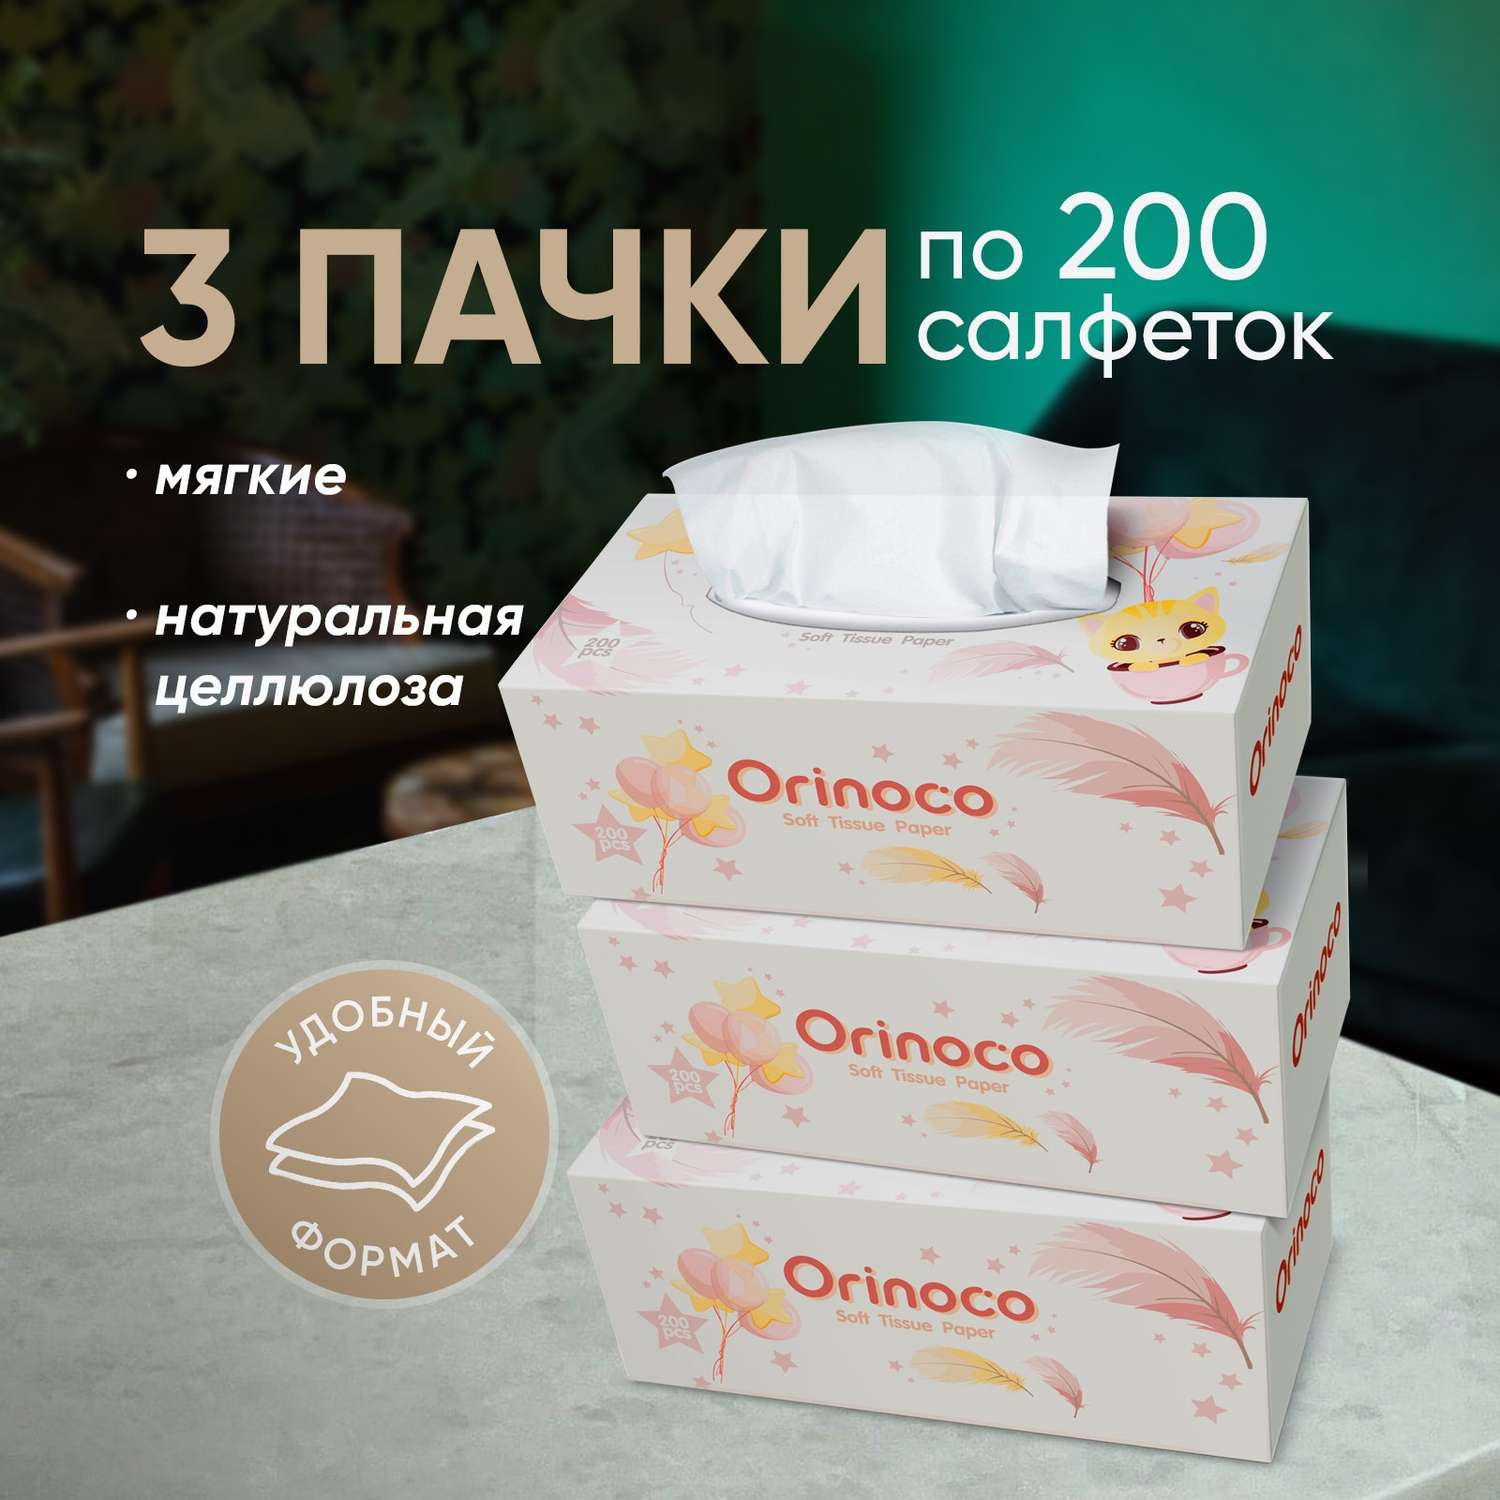 Салфетки выдергушки ORINOCO бумажные 600 шт - фото 1